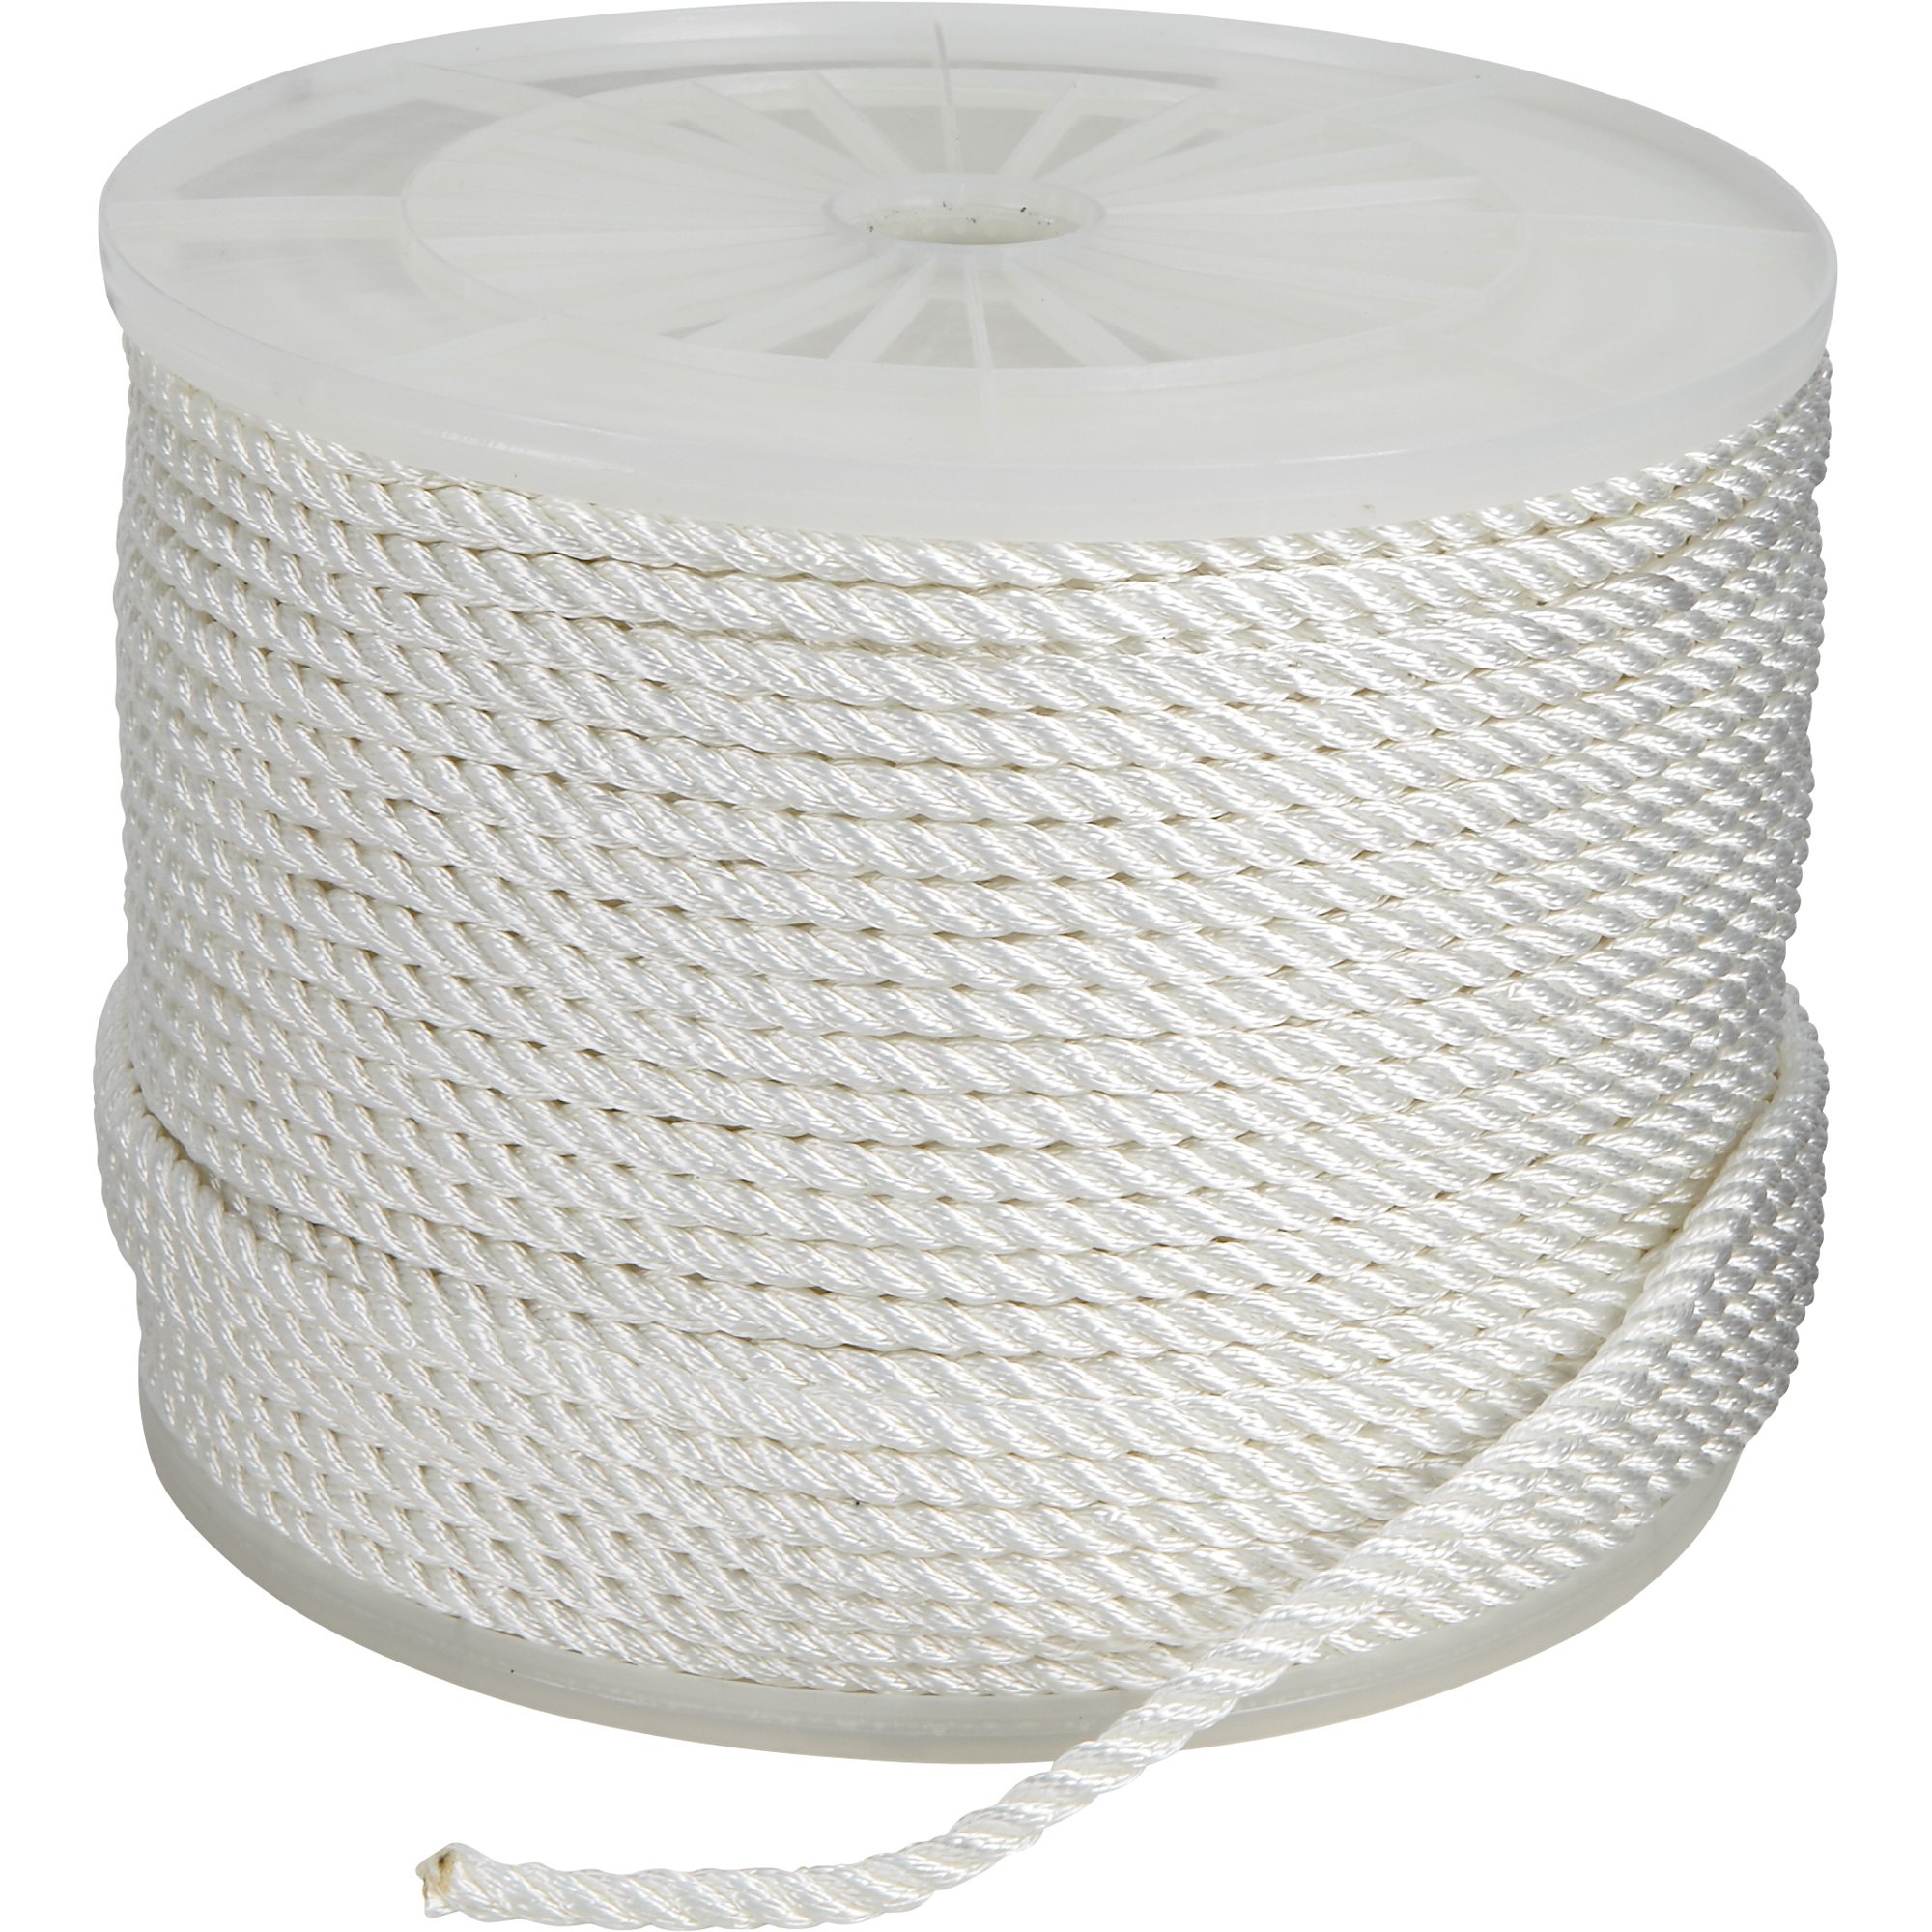 Ben-Mor Twisted Nylon Rope - 3 Strands - White - 50-ft x 1/2-in